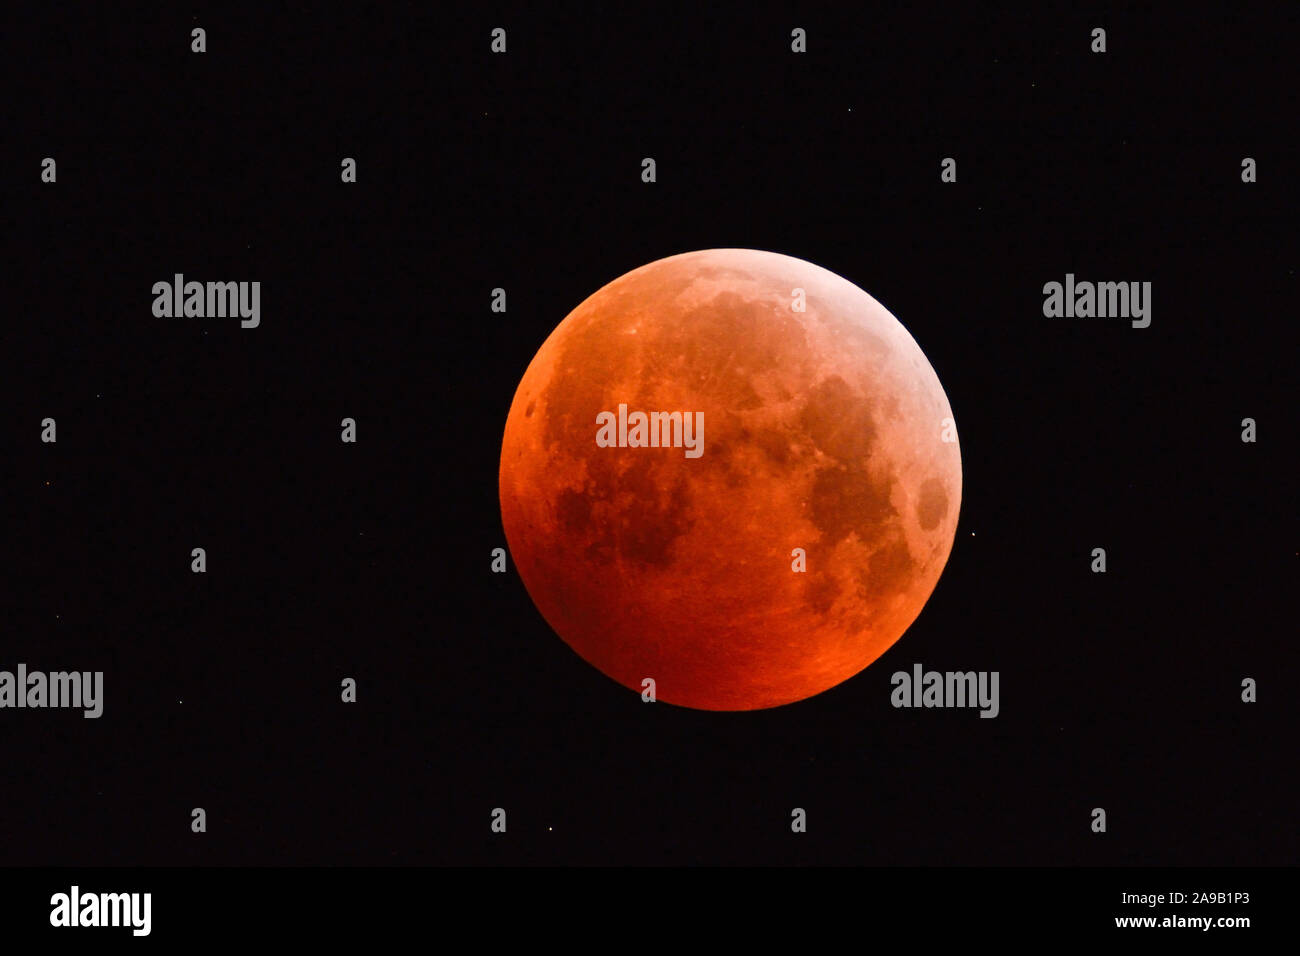 Éclipse de lune Éclipse lunaire, super, rouge sang, supermoon, lune Pleine lune orange rouge avec des étoiles scintillantes, 21 janvier 2019, l'Allemagne. Banque D'Images